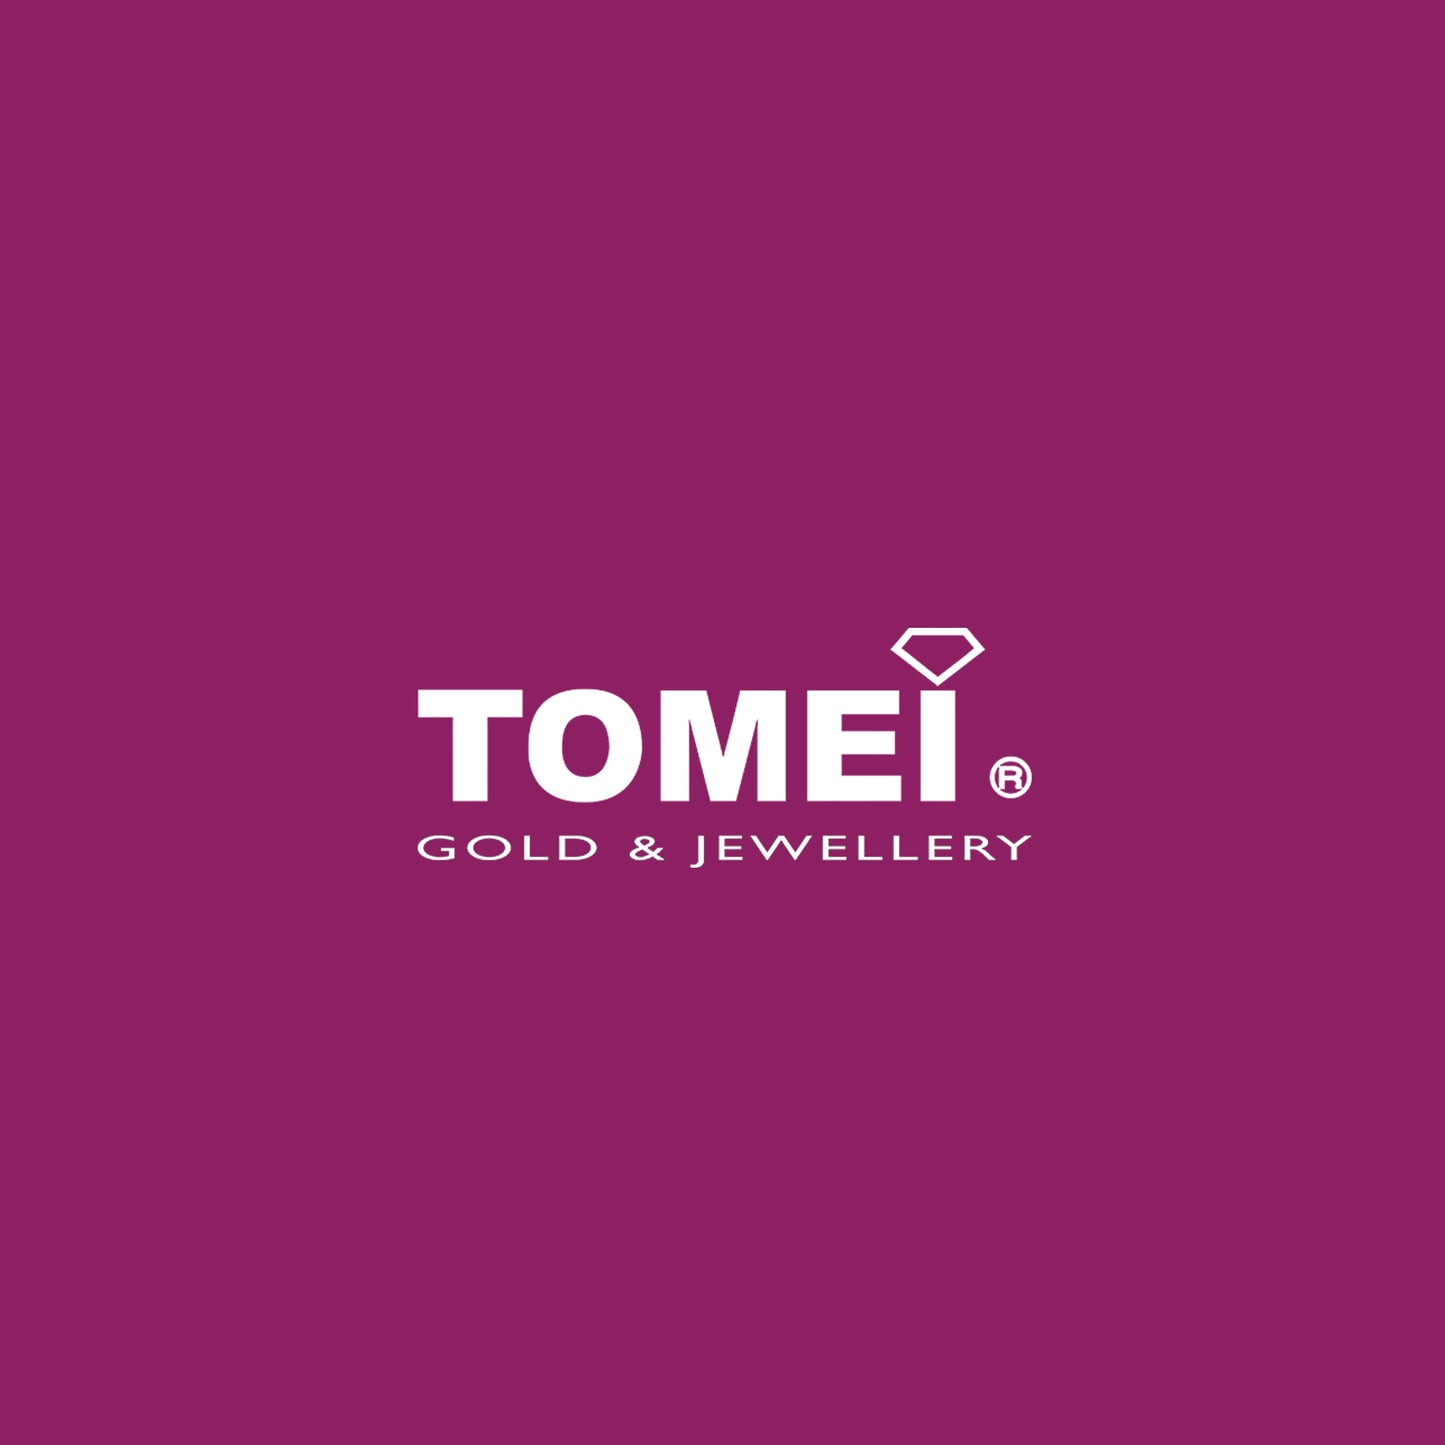 TOMEI Pav?? of Resplendently Striking Coeur de Jour Diamond Pendant | White Gold 750 (18K) (P5204)